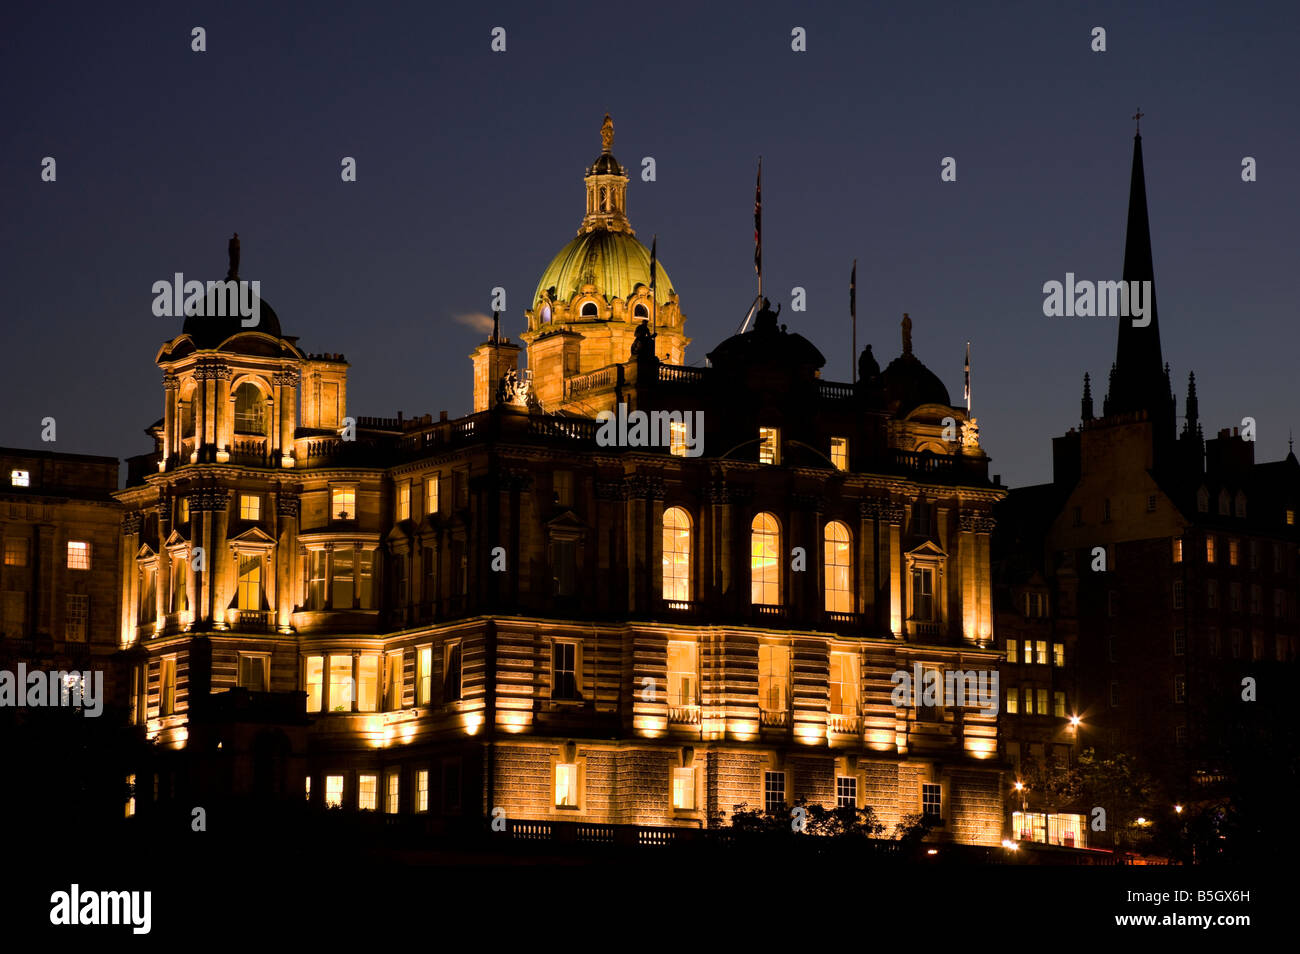 Allumé Lloyds Banking Group, Bank of Scotland (Hbos) ancien siège, Édimbourg, Écosse, Royaume-Uni, Europe Banque D'Images